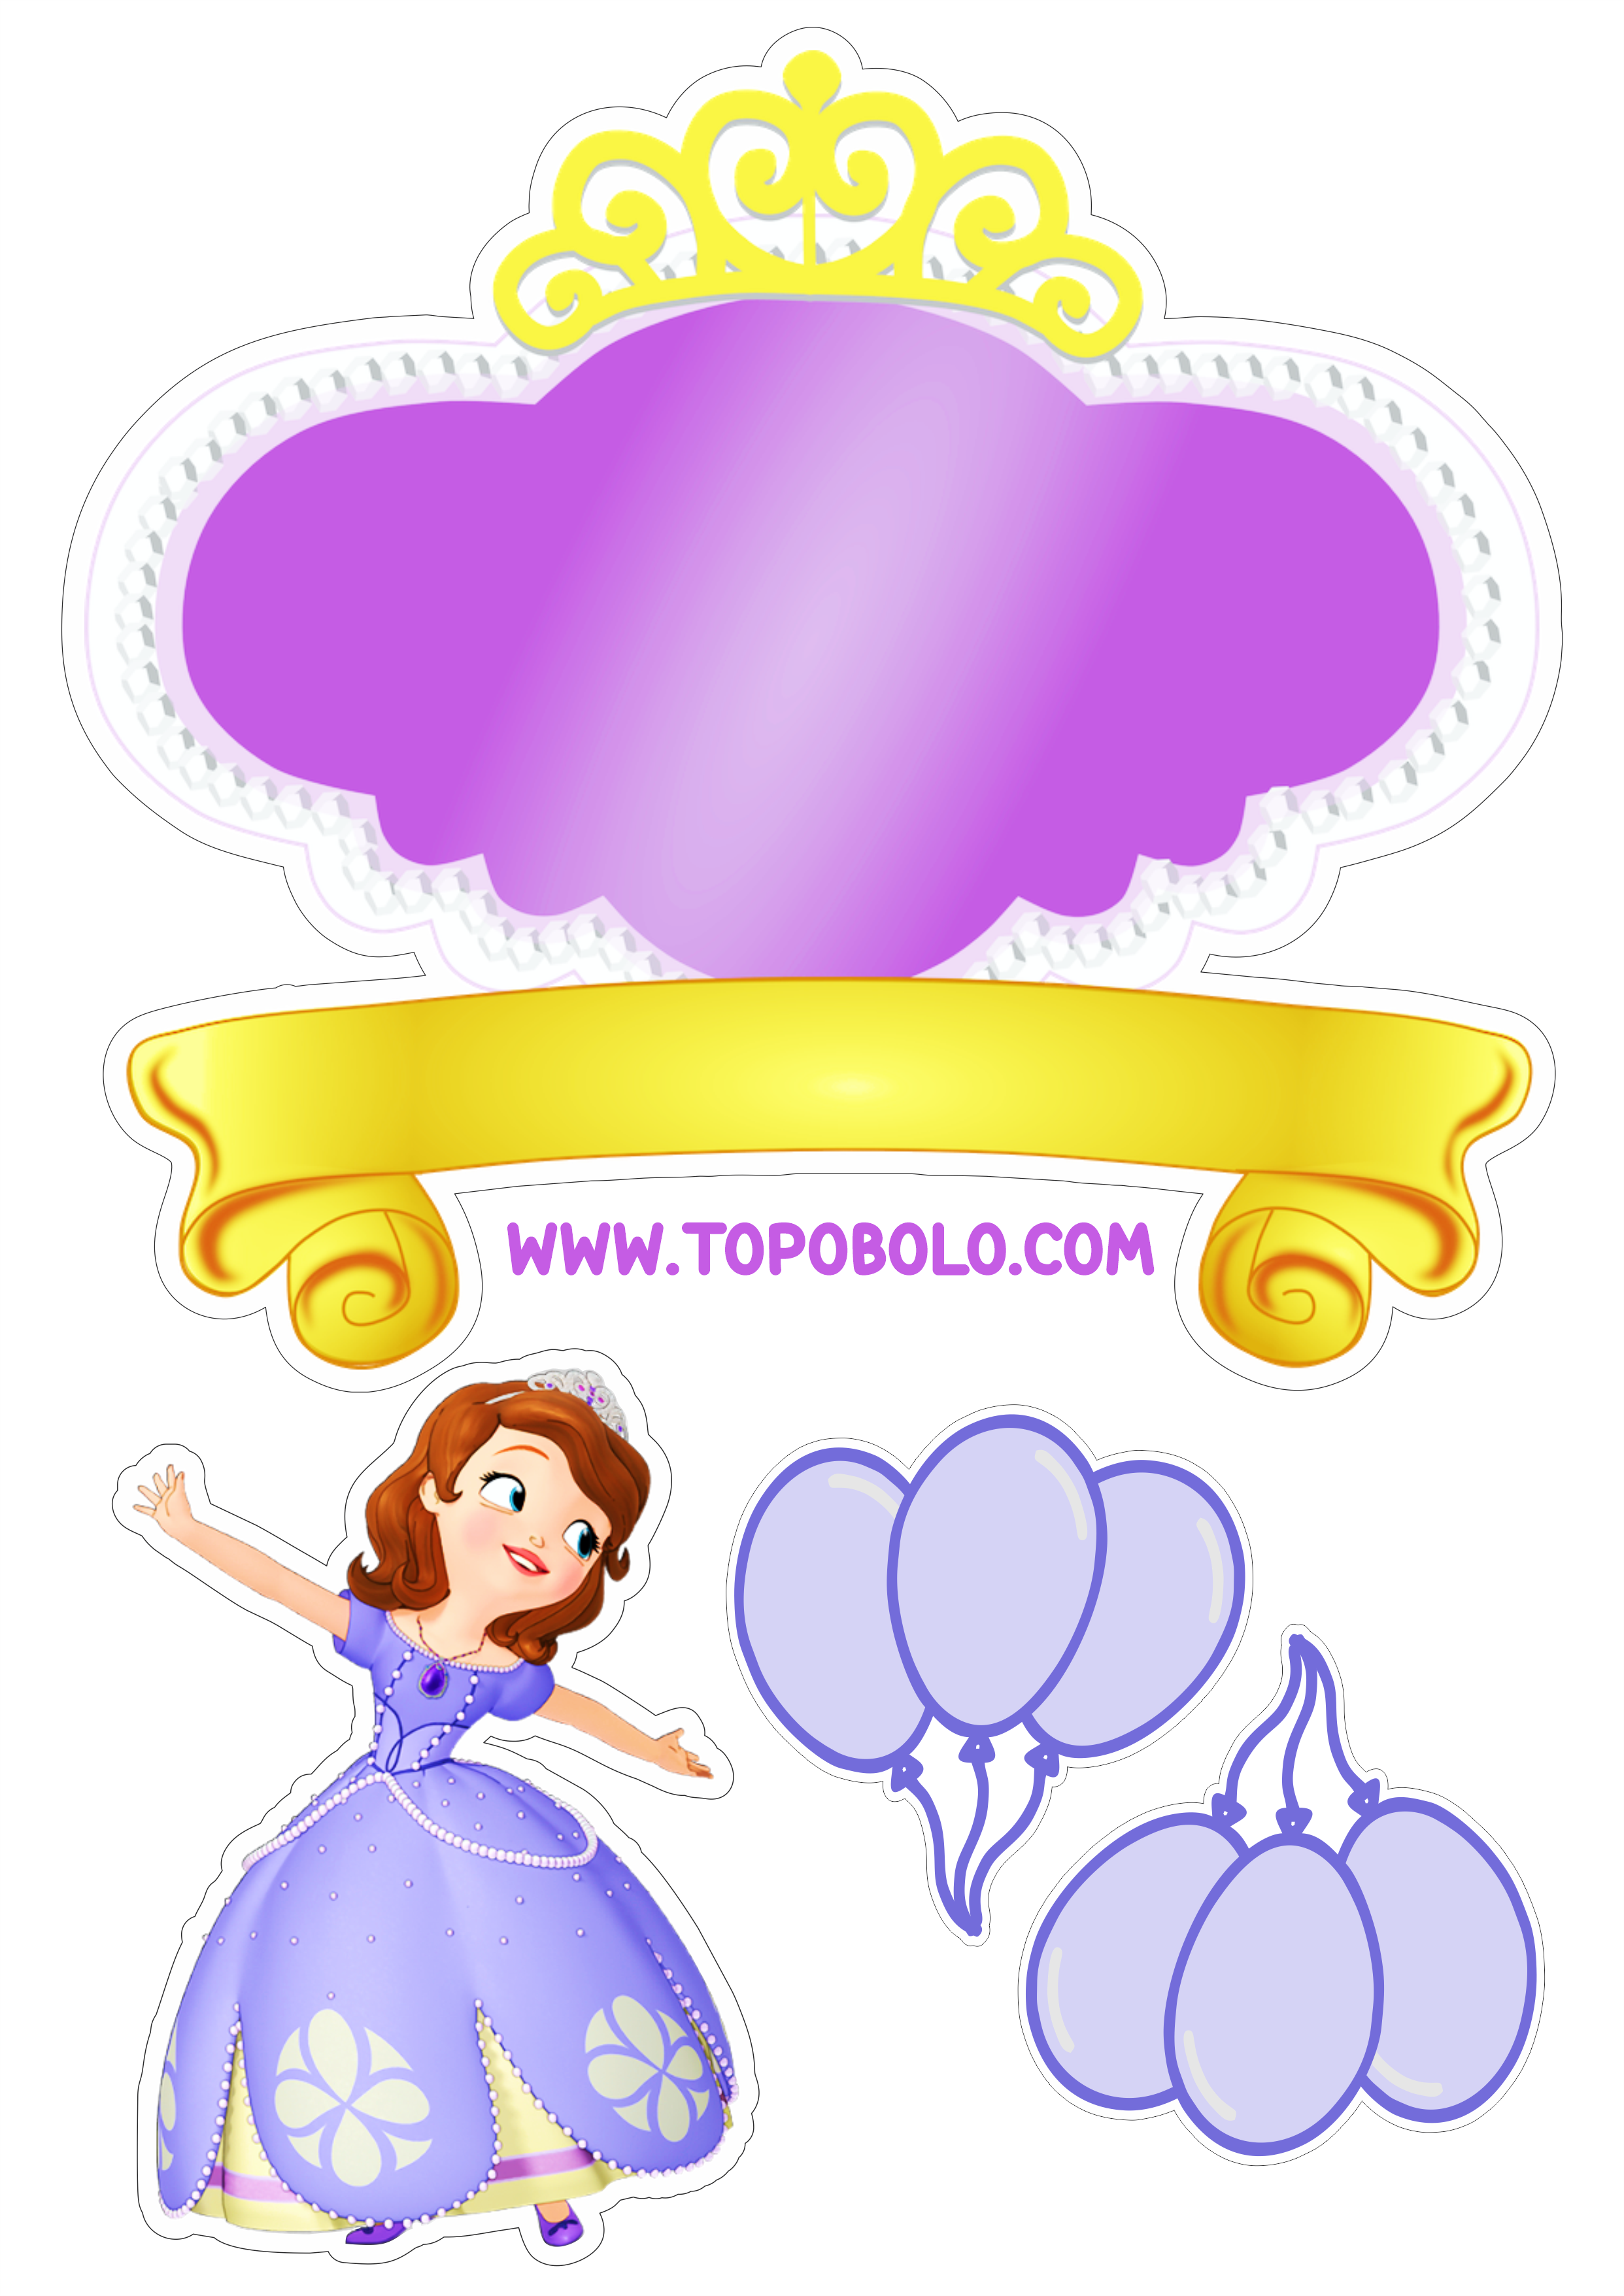 Topo de bolo grátis Princesinha Sofia festa de aniversário papelaria criativa personalizado renda extra com decoração download free png